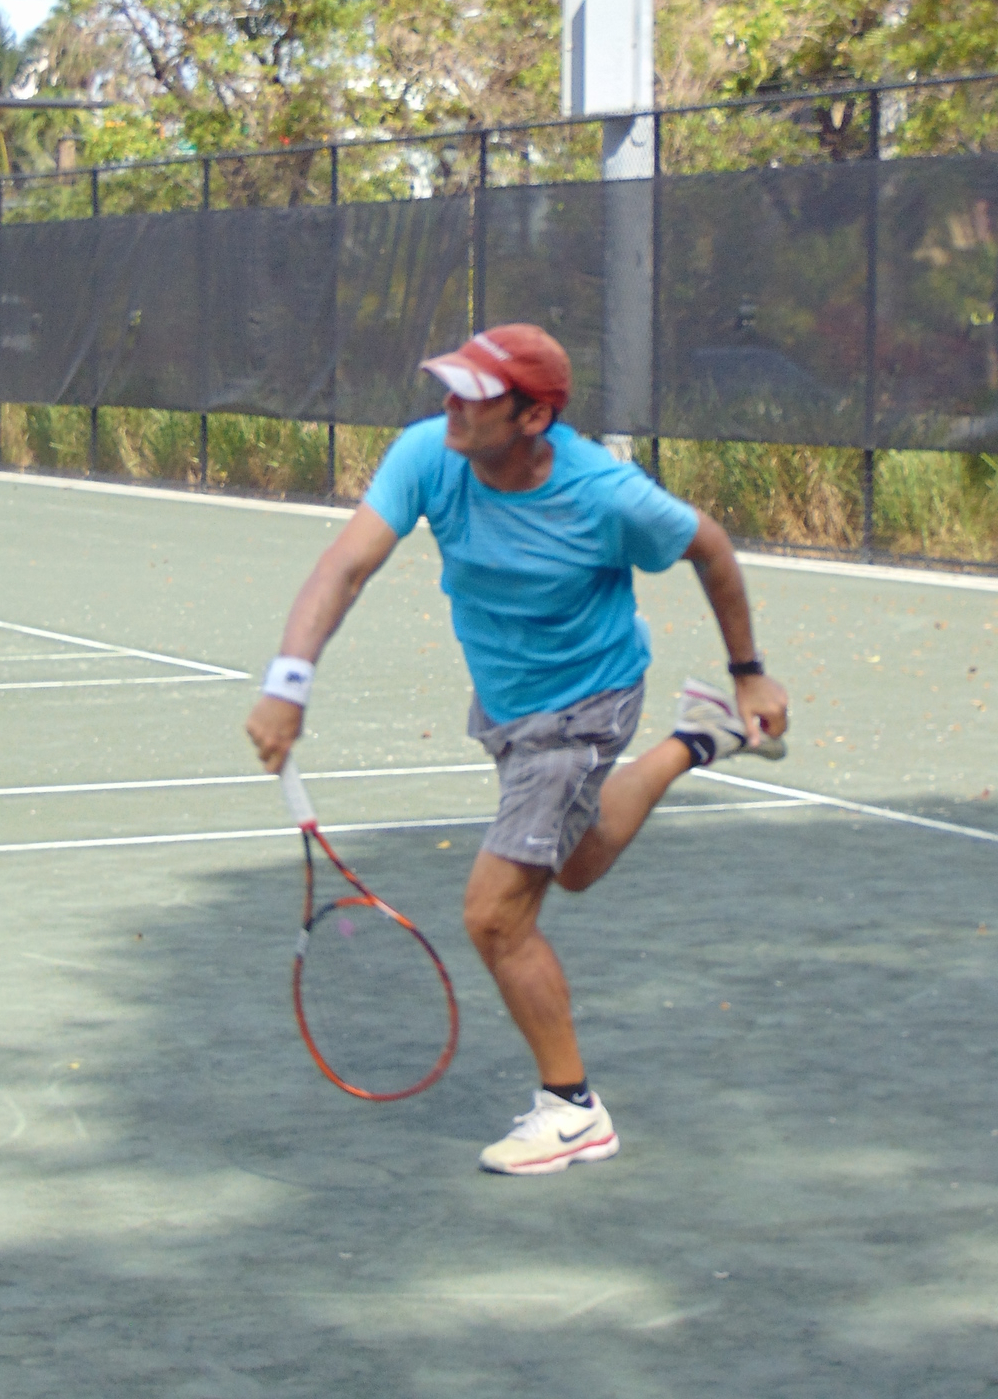 Douglas M. teaches tennis lessons in Miami Beach, FL